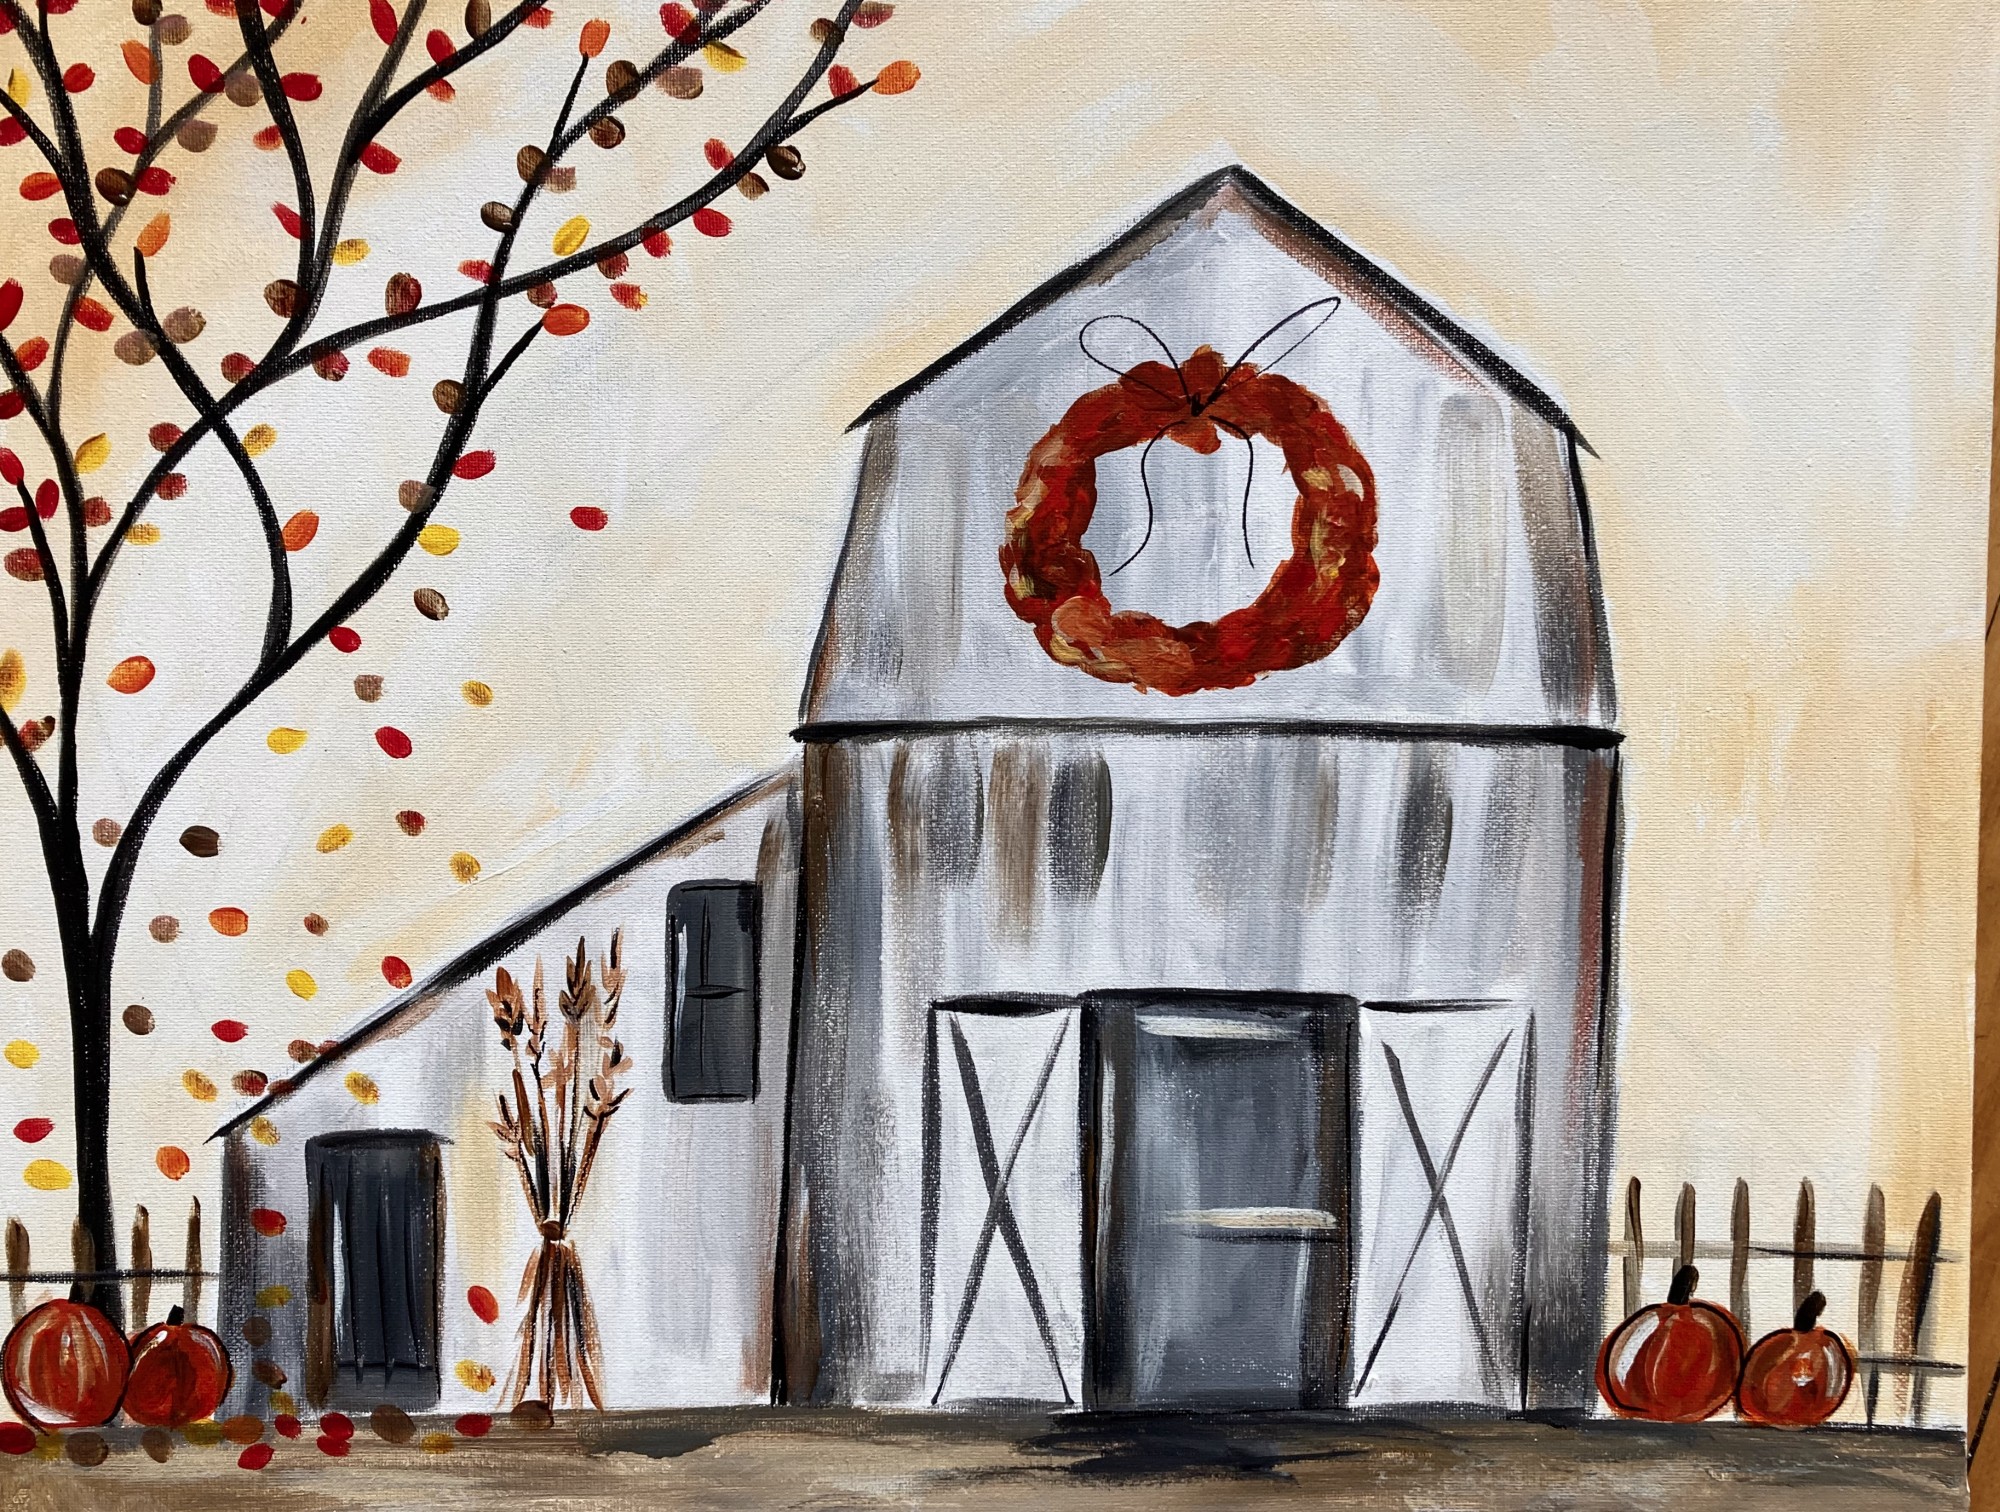 Fall Farmhouse $30 SPECIAL - In Studio